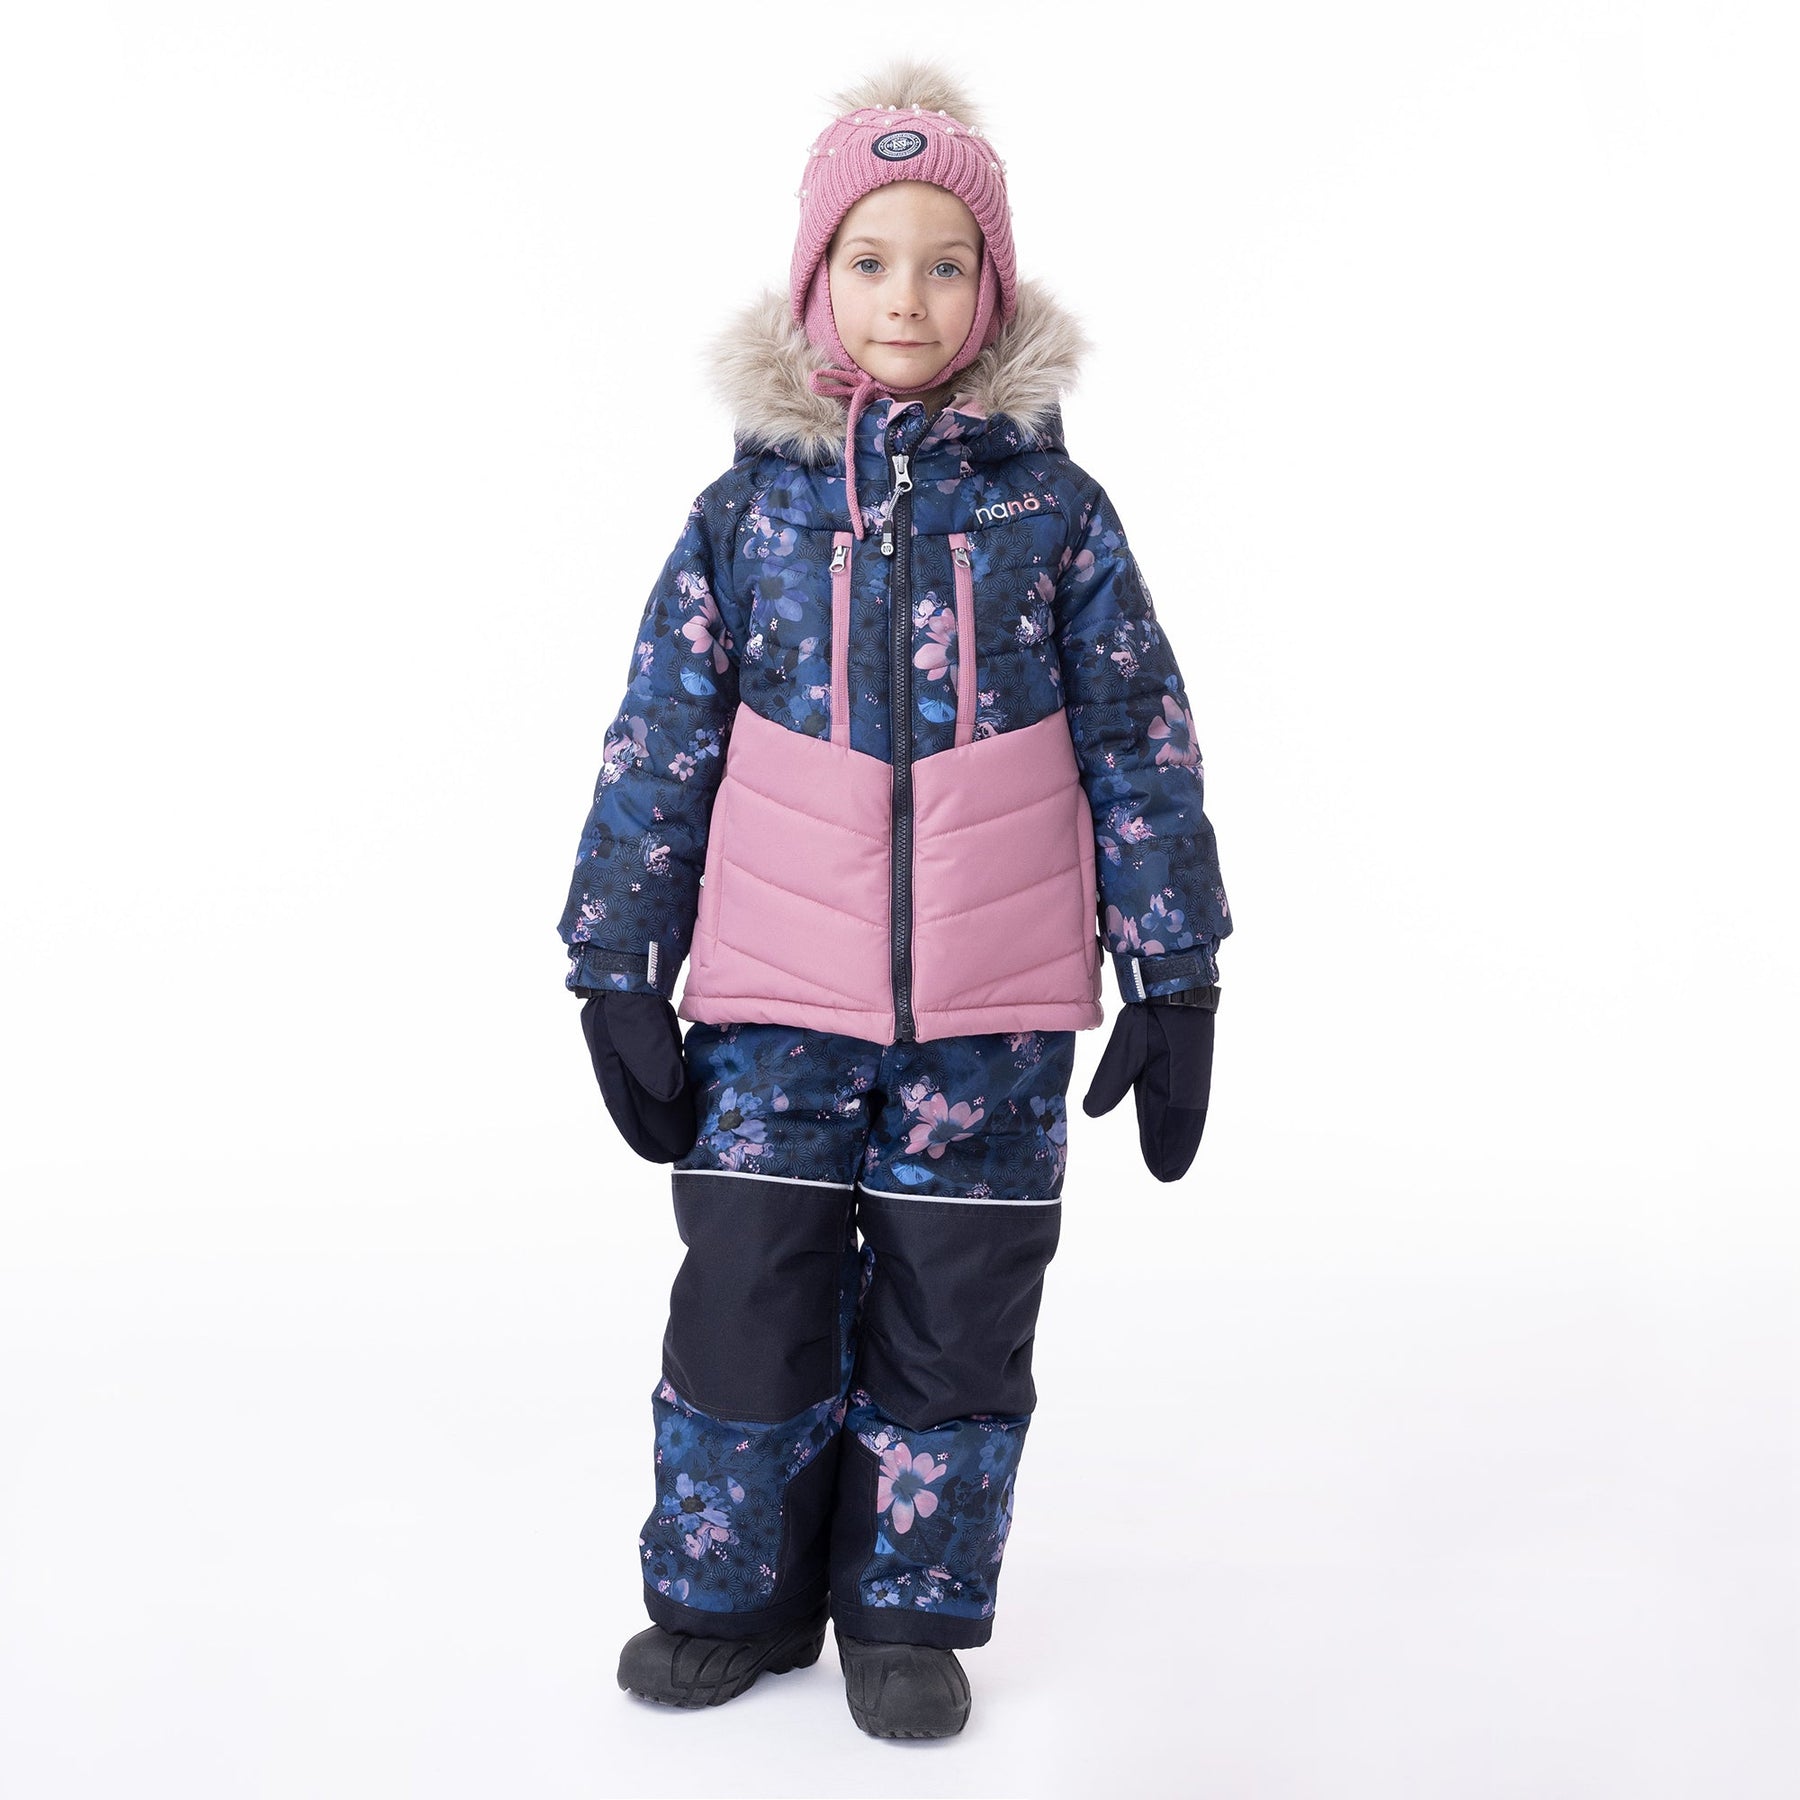 Habit de neige pour enfant fille par Nanö | Yasmine/F23M288 Marine | Boutique Flos, vêtements mode pour bébés et enfants